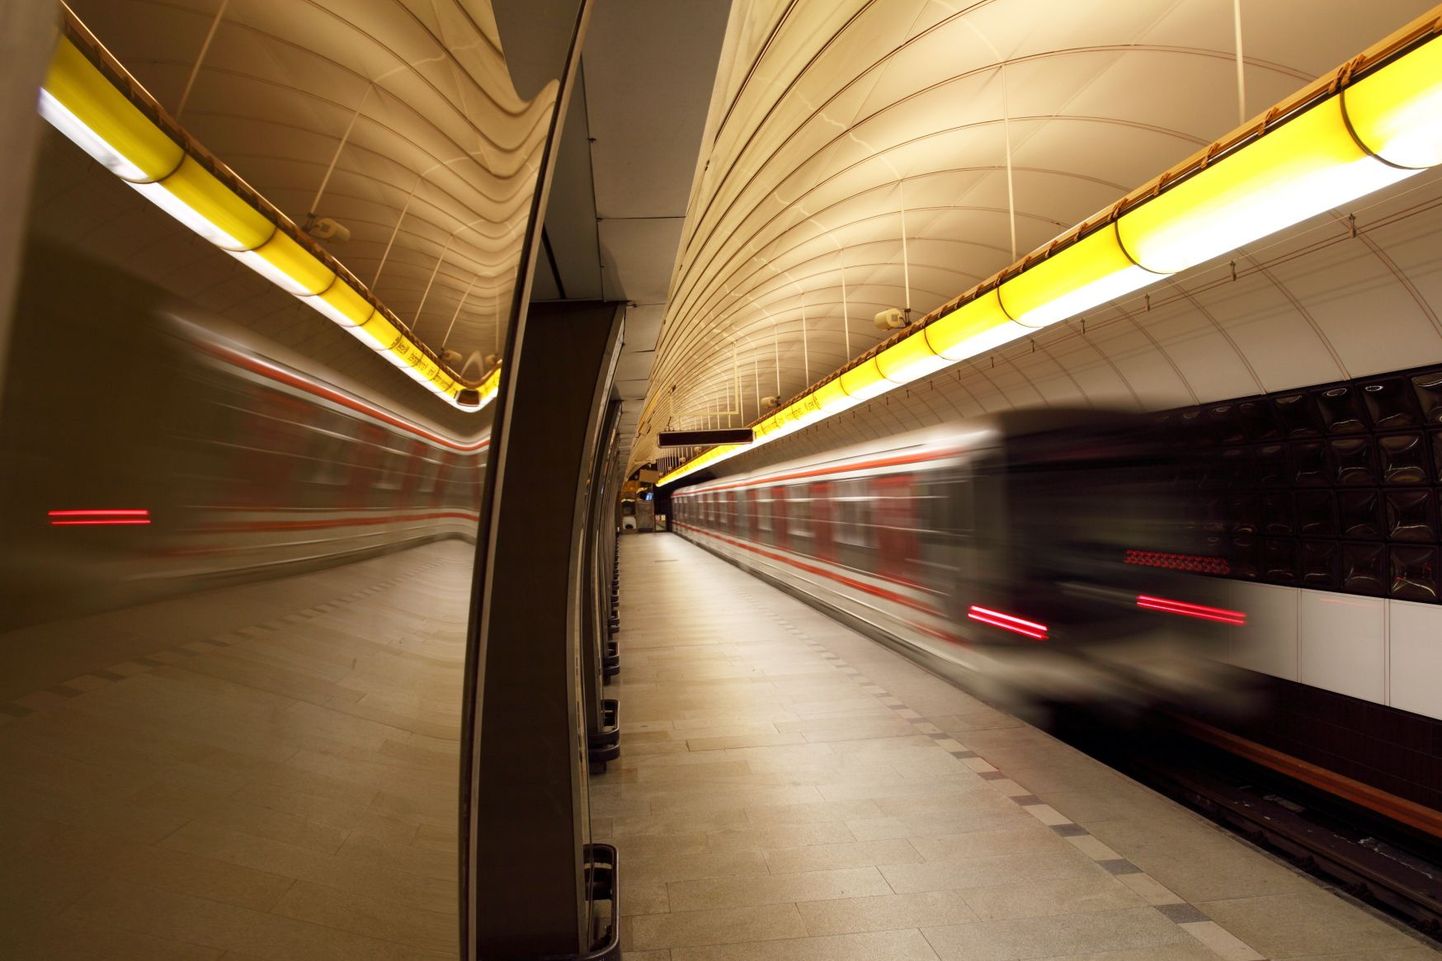 Stockholmis plaanitakse 2025. aastaks vähemalt ühele liinile automatiseeritud metroorong sõitma panna.